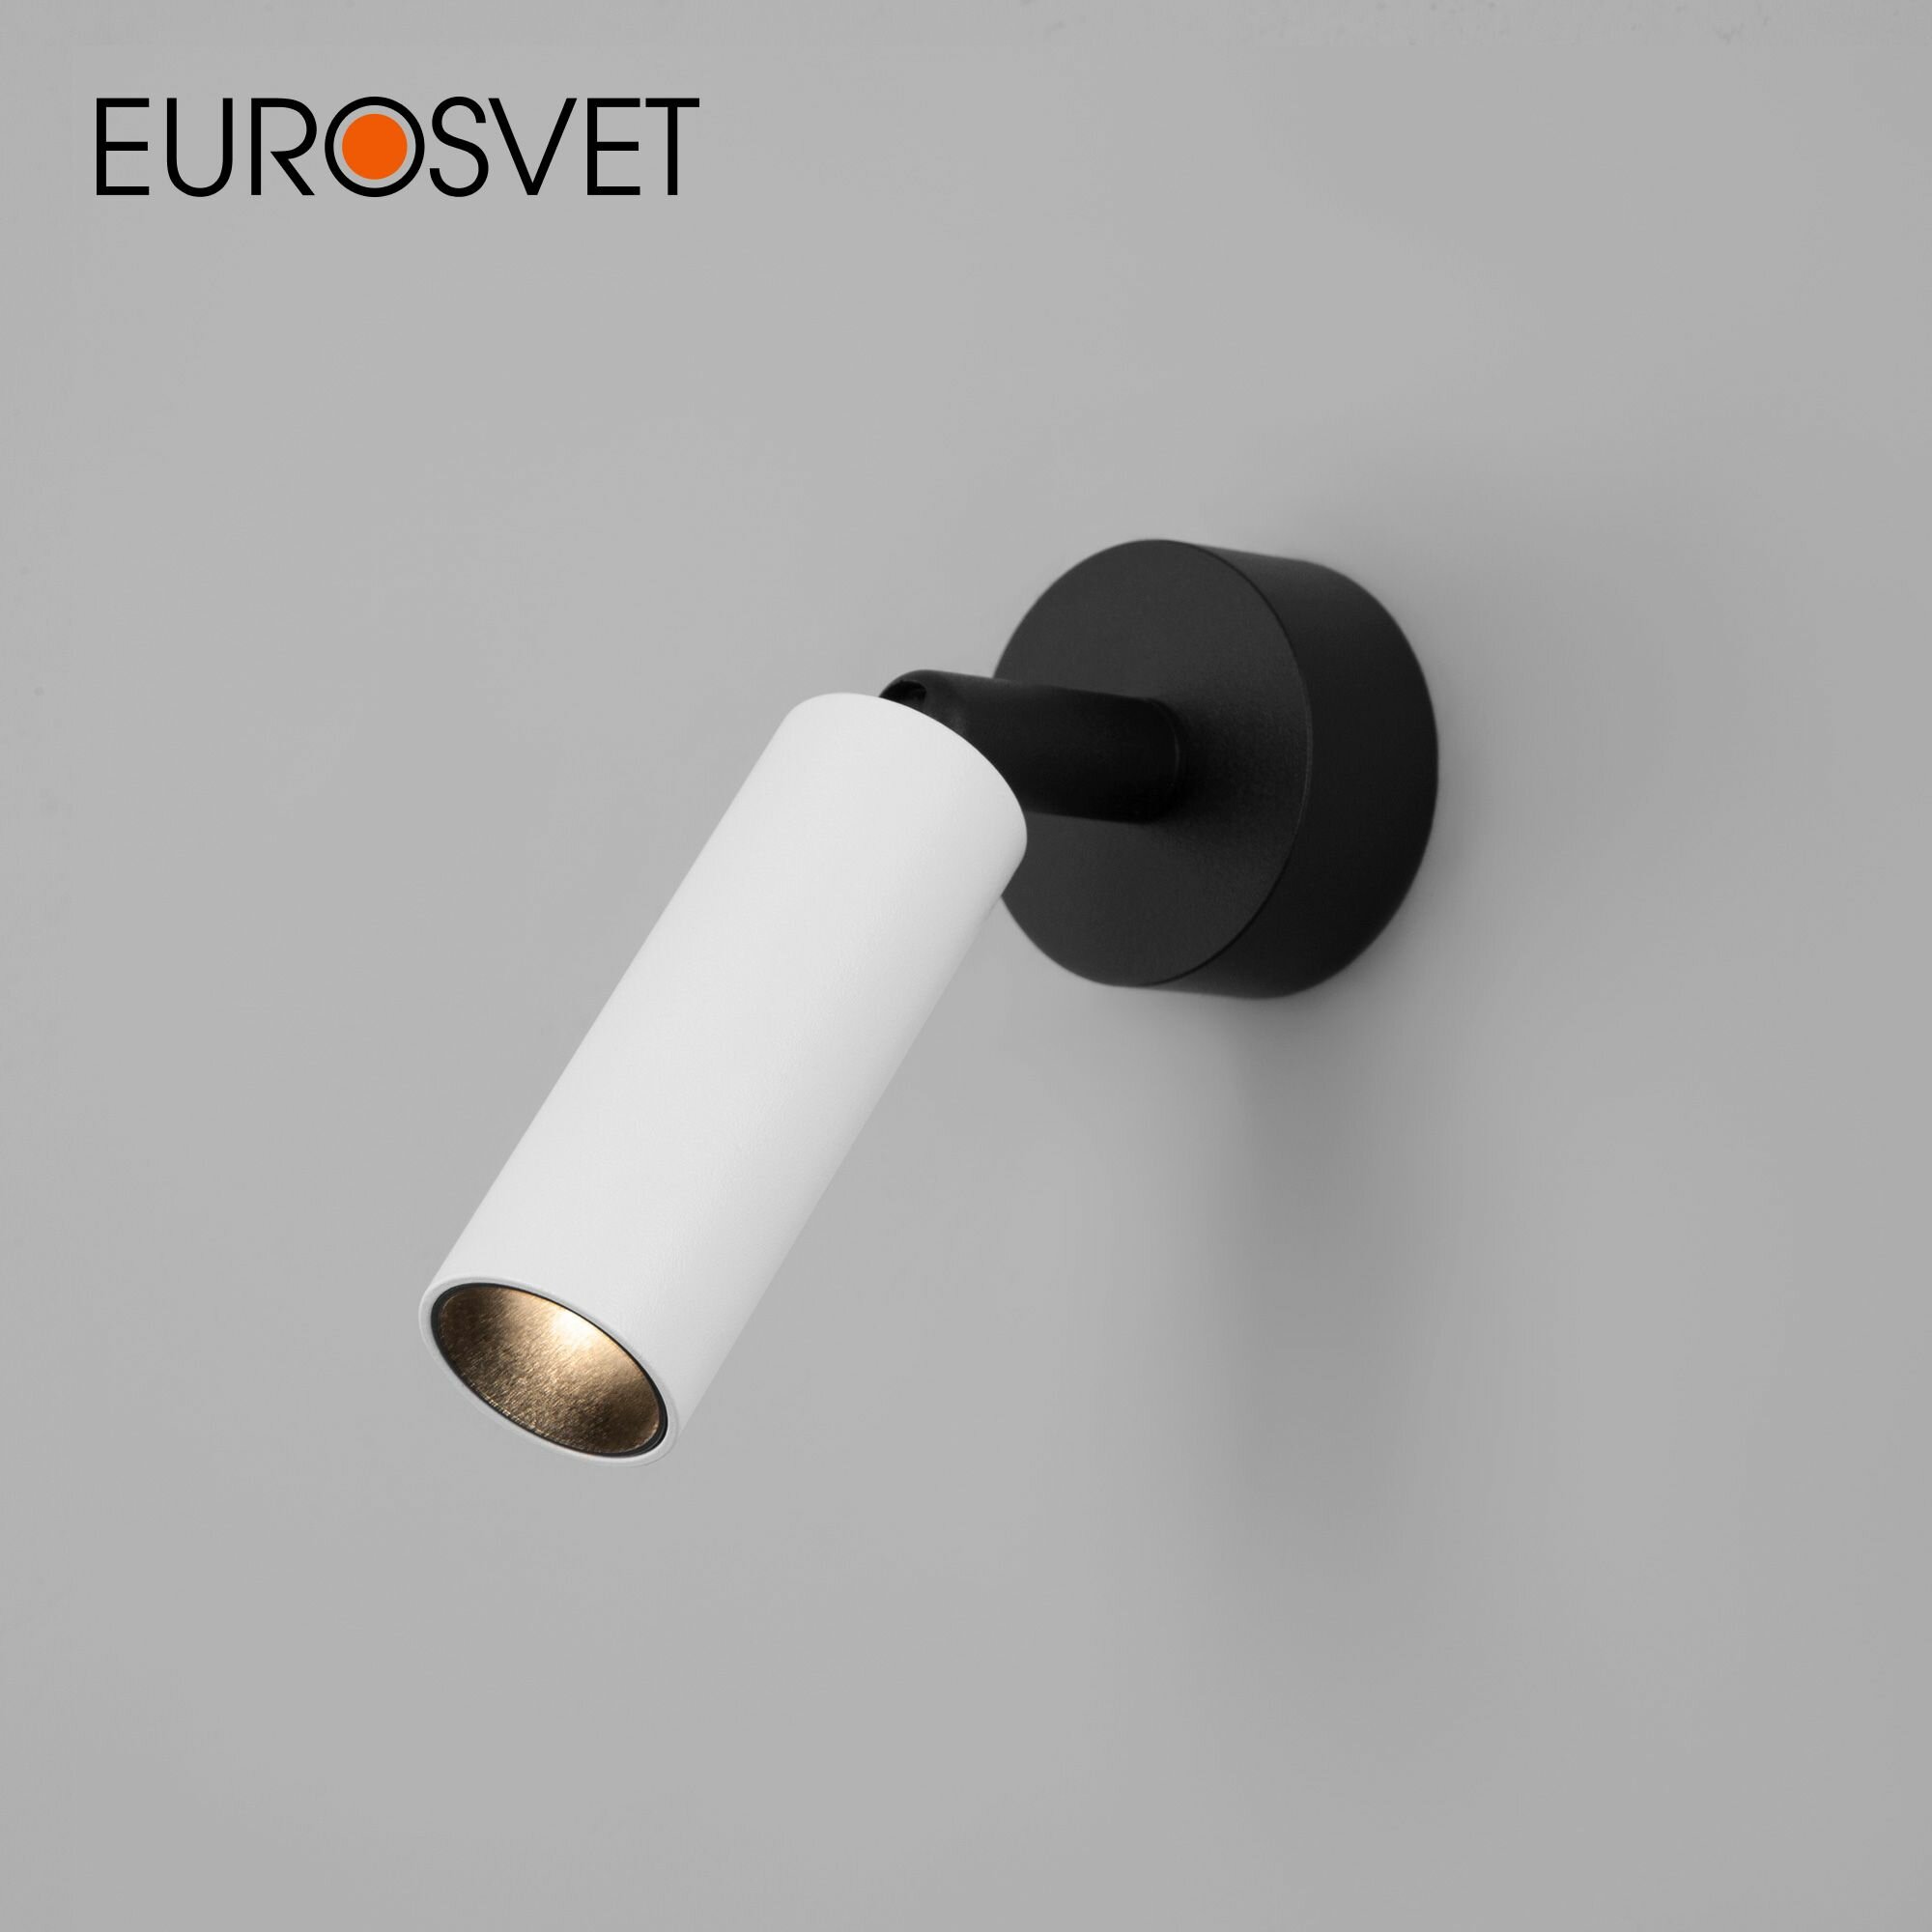 Спот / Накладной светодиодный светильник с поворотным плафоном Eurosvet Pin 20133/1 LED, 3 Вт, 4200 К, цвет белый / черный